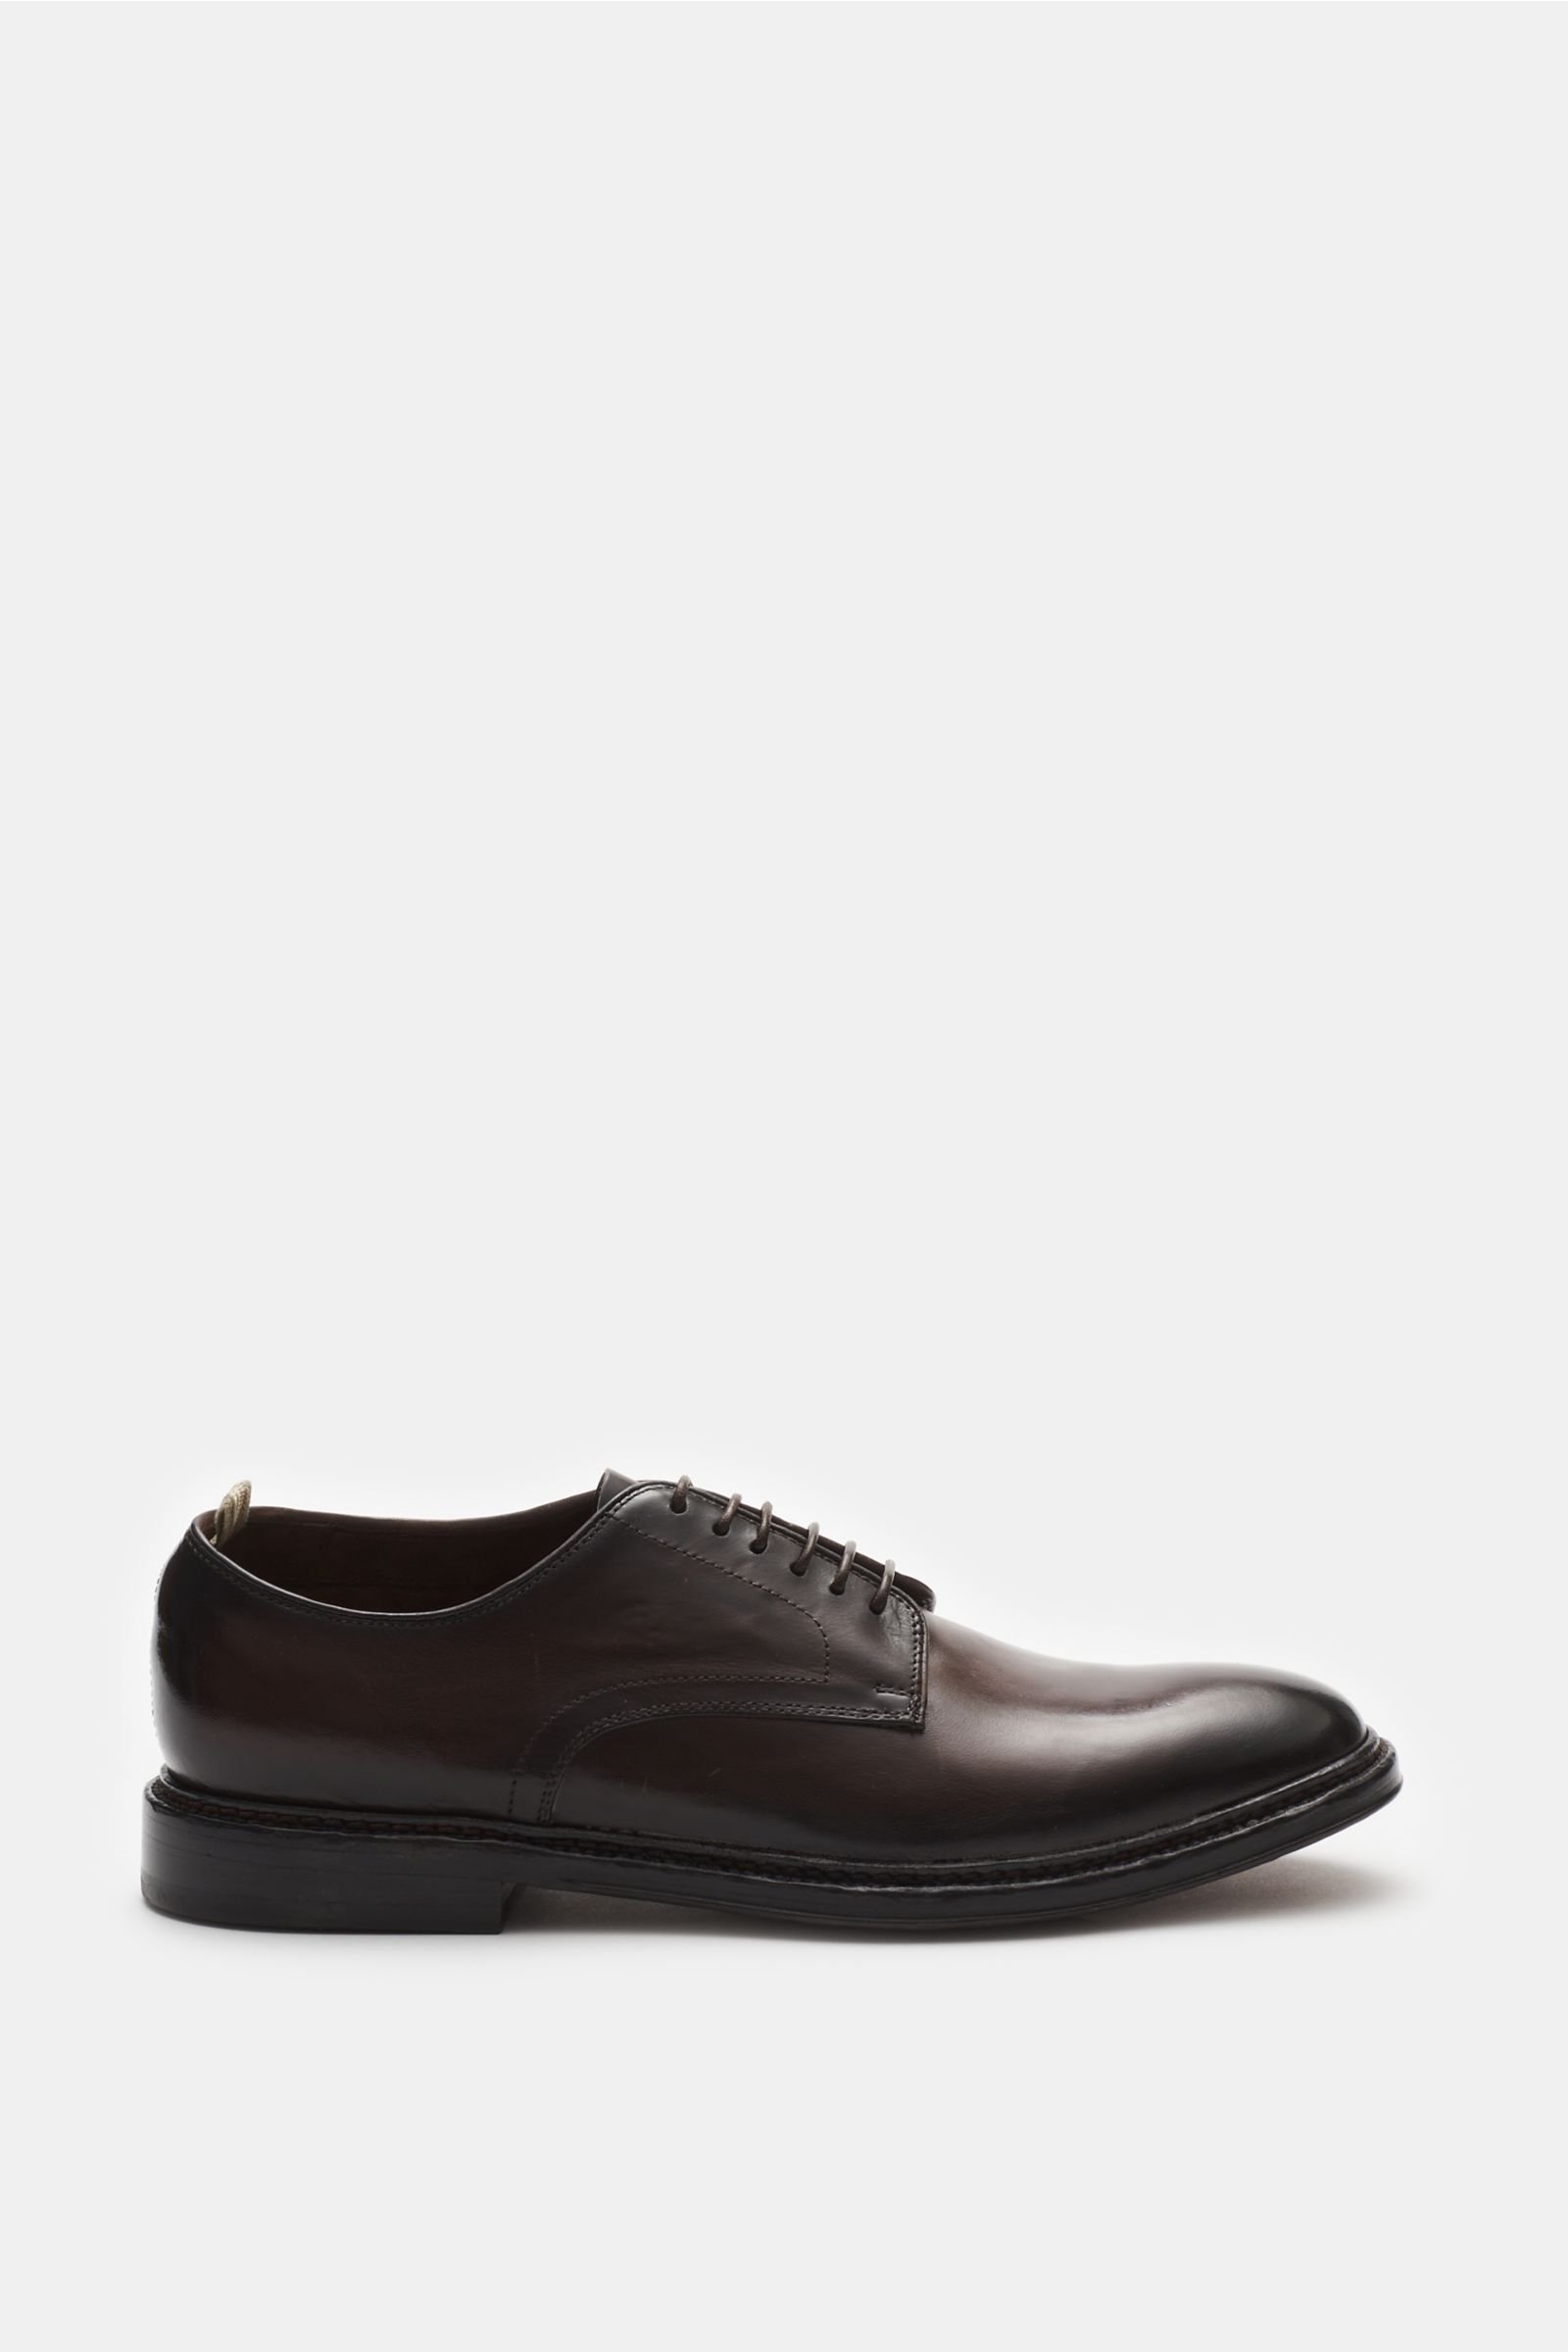 Derby shoes 'Hopkins 001' dark brown